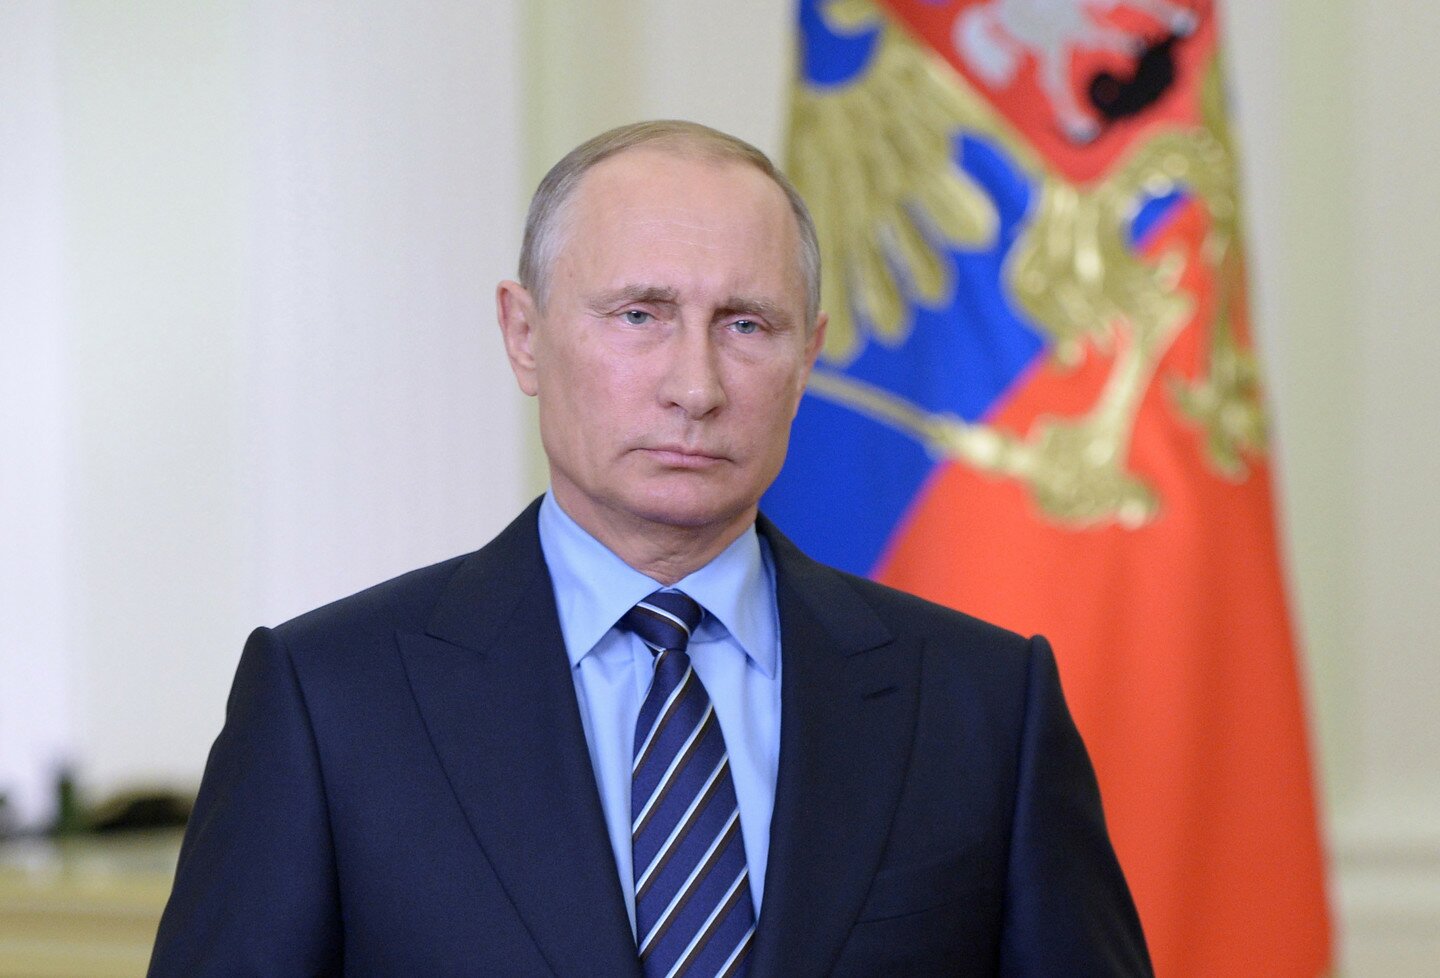 Владимир Путин дал пресс-конференцию по итогам саммита БРИКС в Индии: полное видео выступления президента России